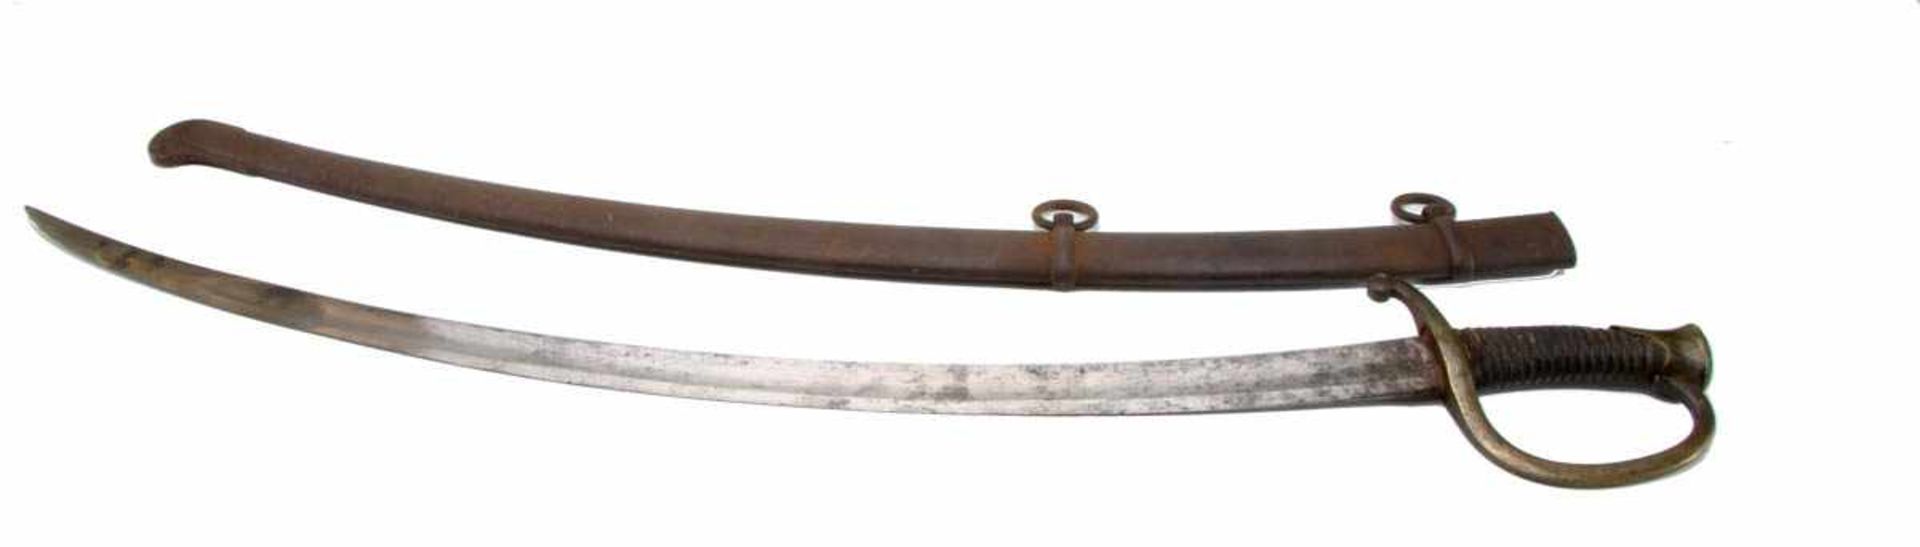 Säbel, Frankreich um 1800-1850 Säbel für Mannschaften der berittenen Artillerie, breite